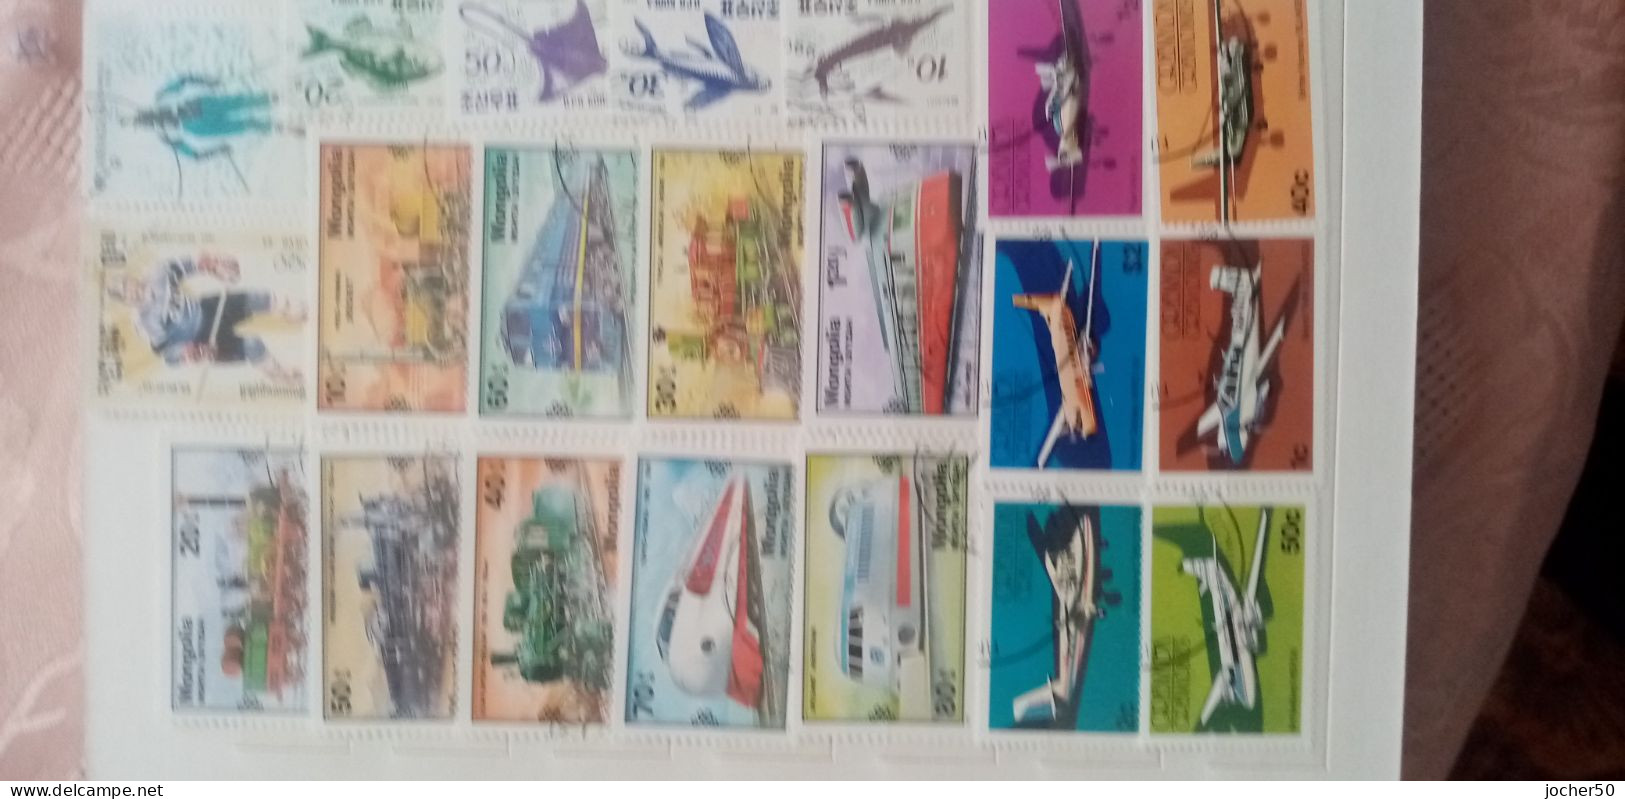 10 album di francobolli